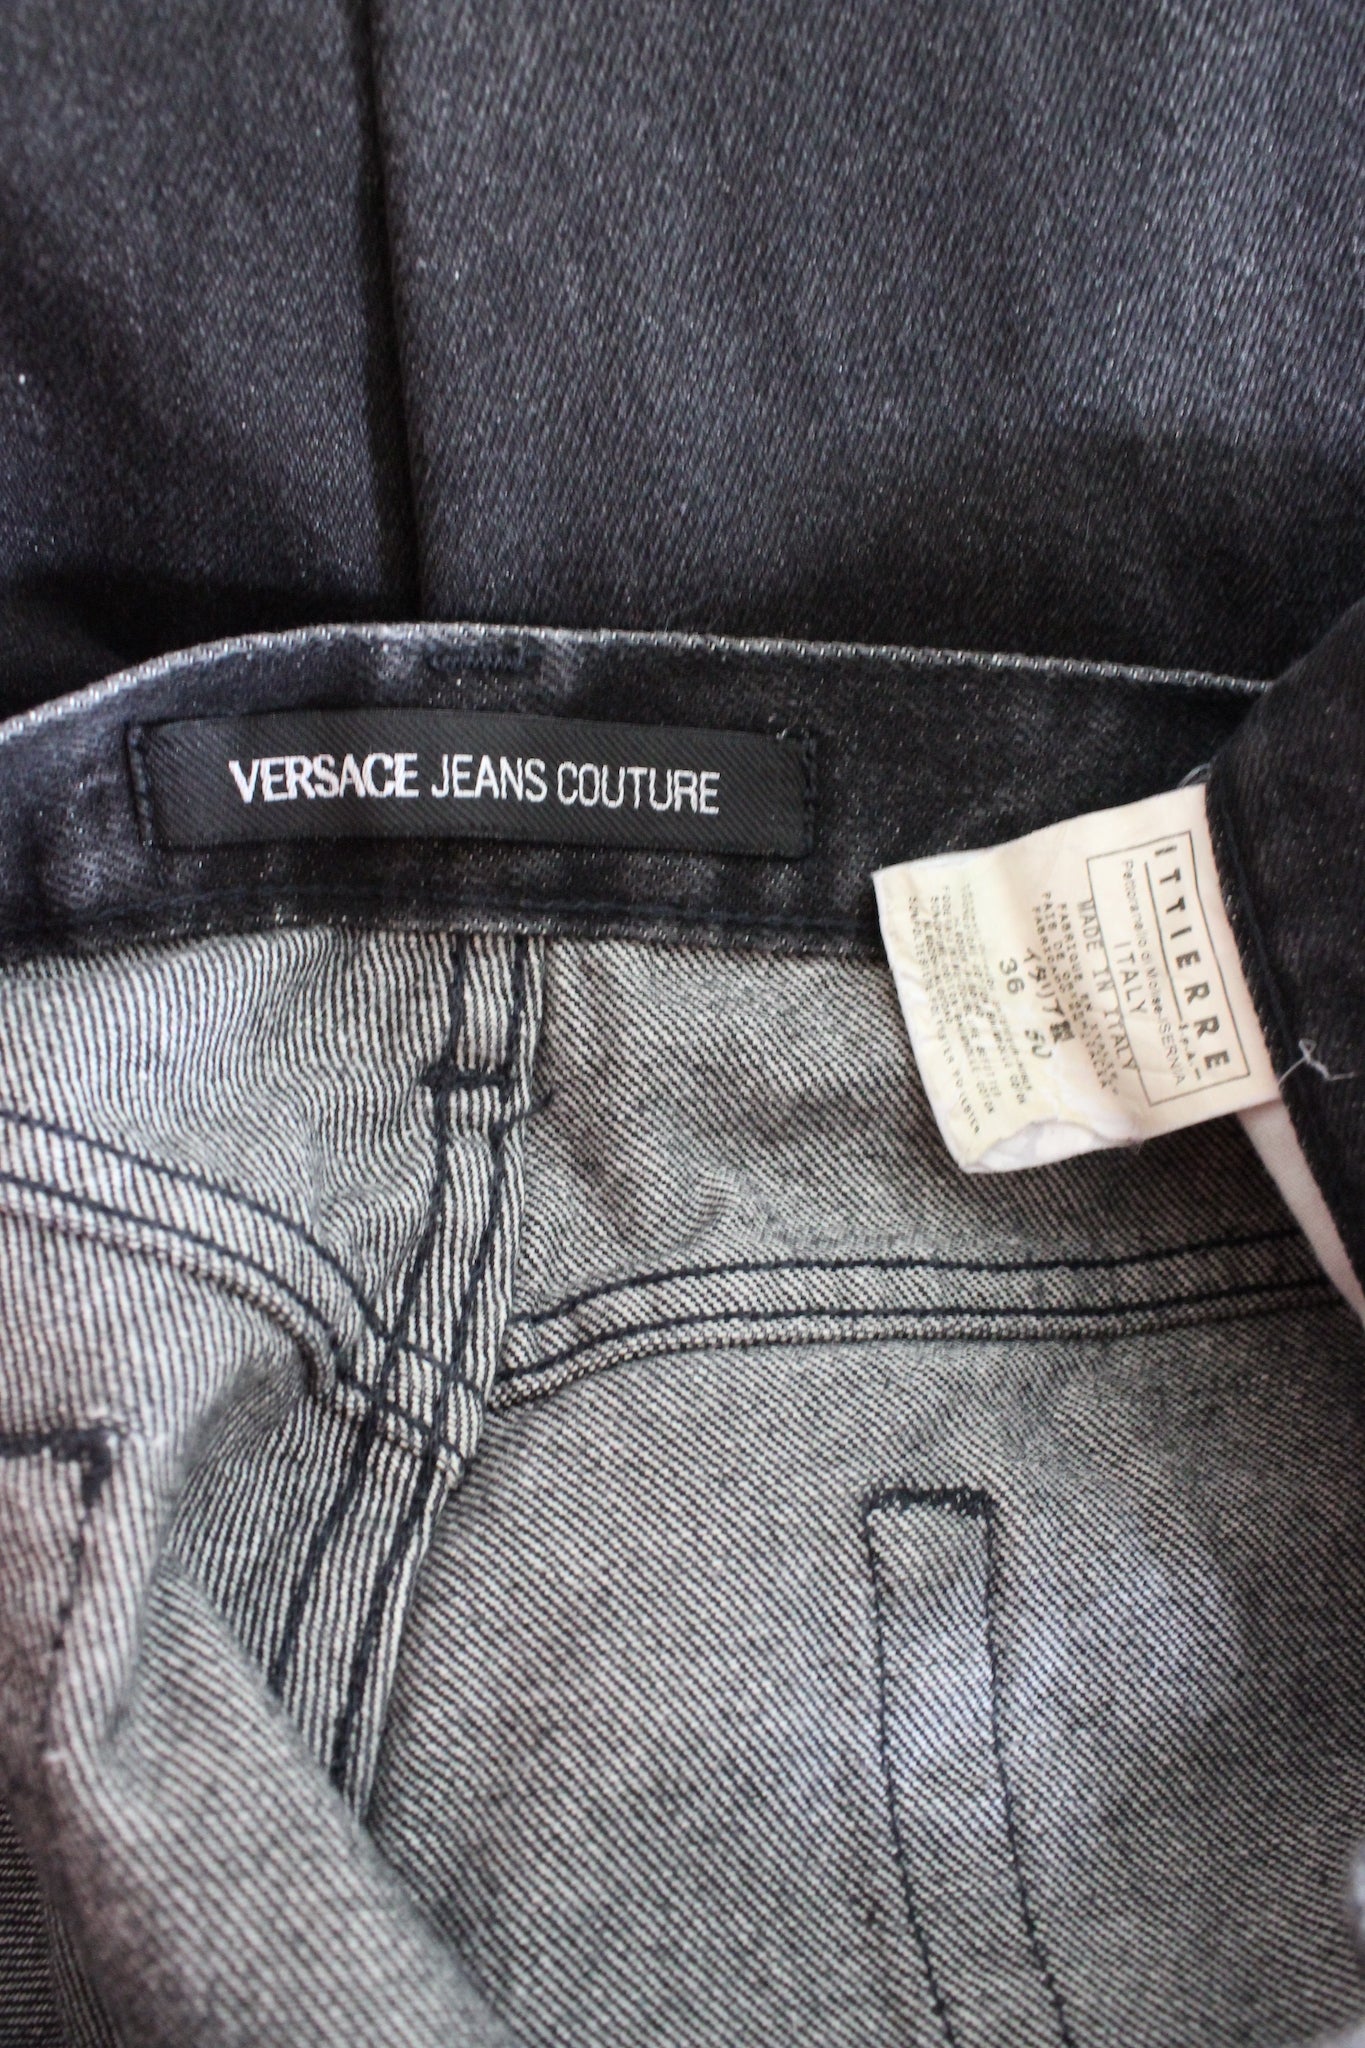 Versace Jeans Classico Nero Vintage Anni 90